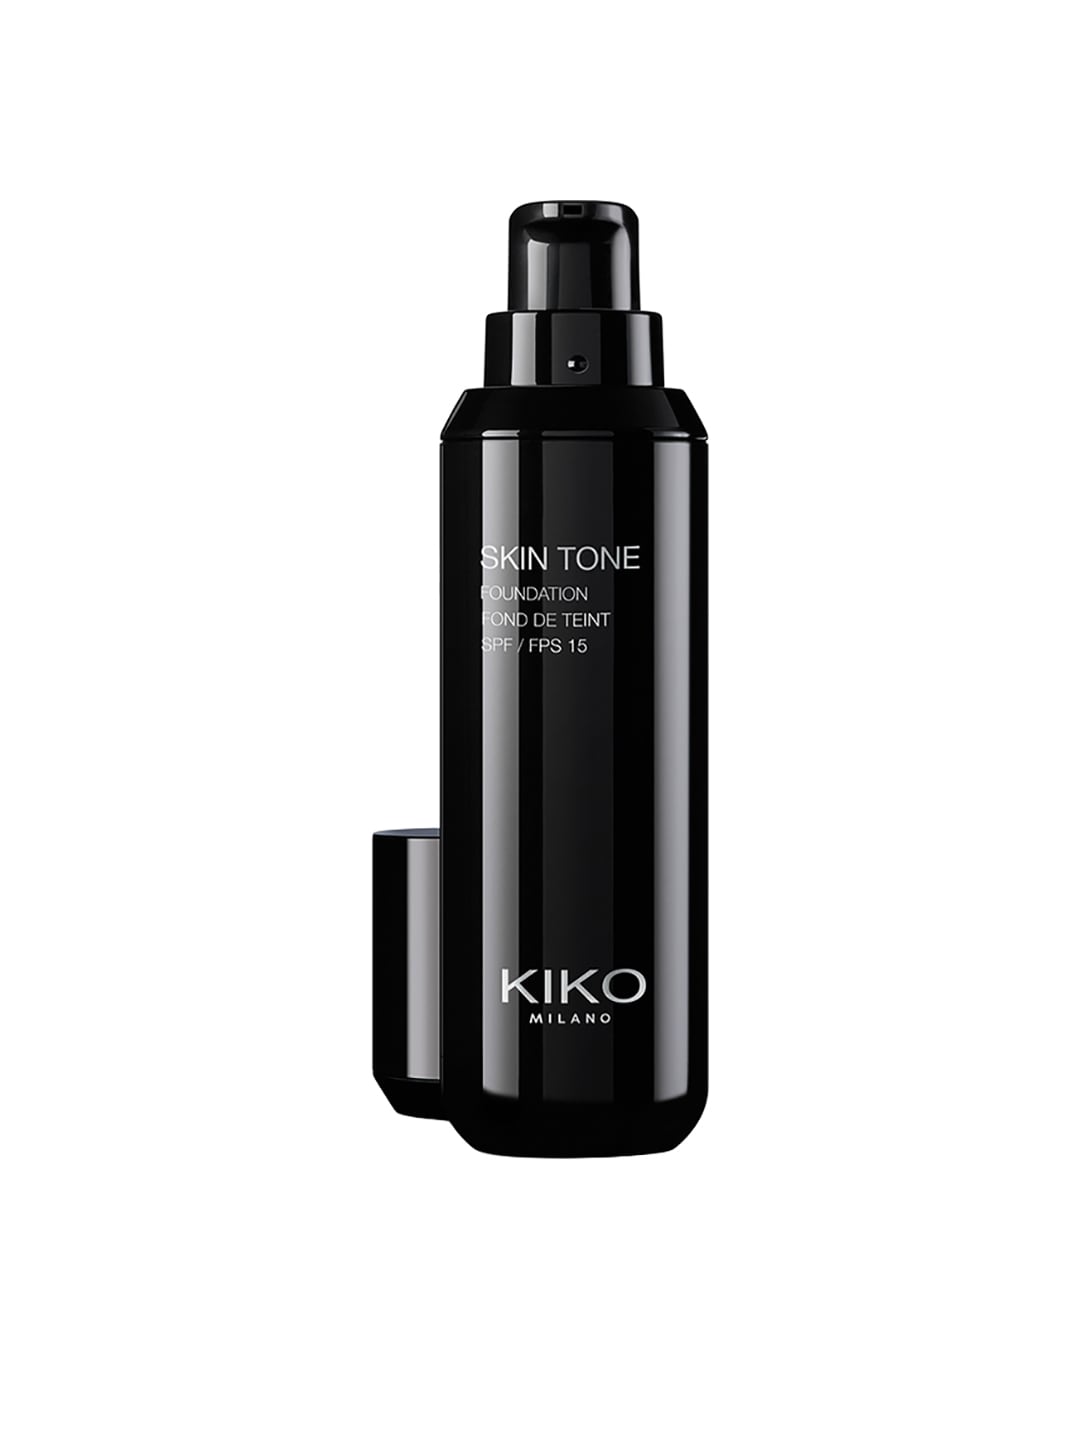 KIKO MILANO Skin Tone Foundation SPF 15 N 80 30ml Price in India